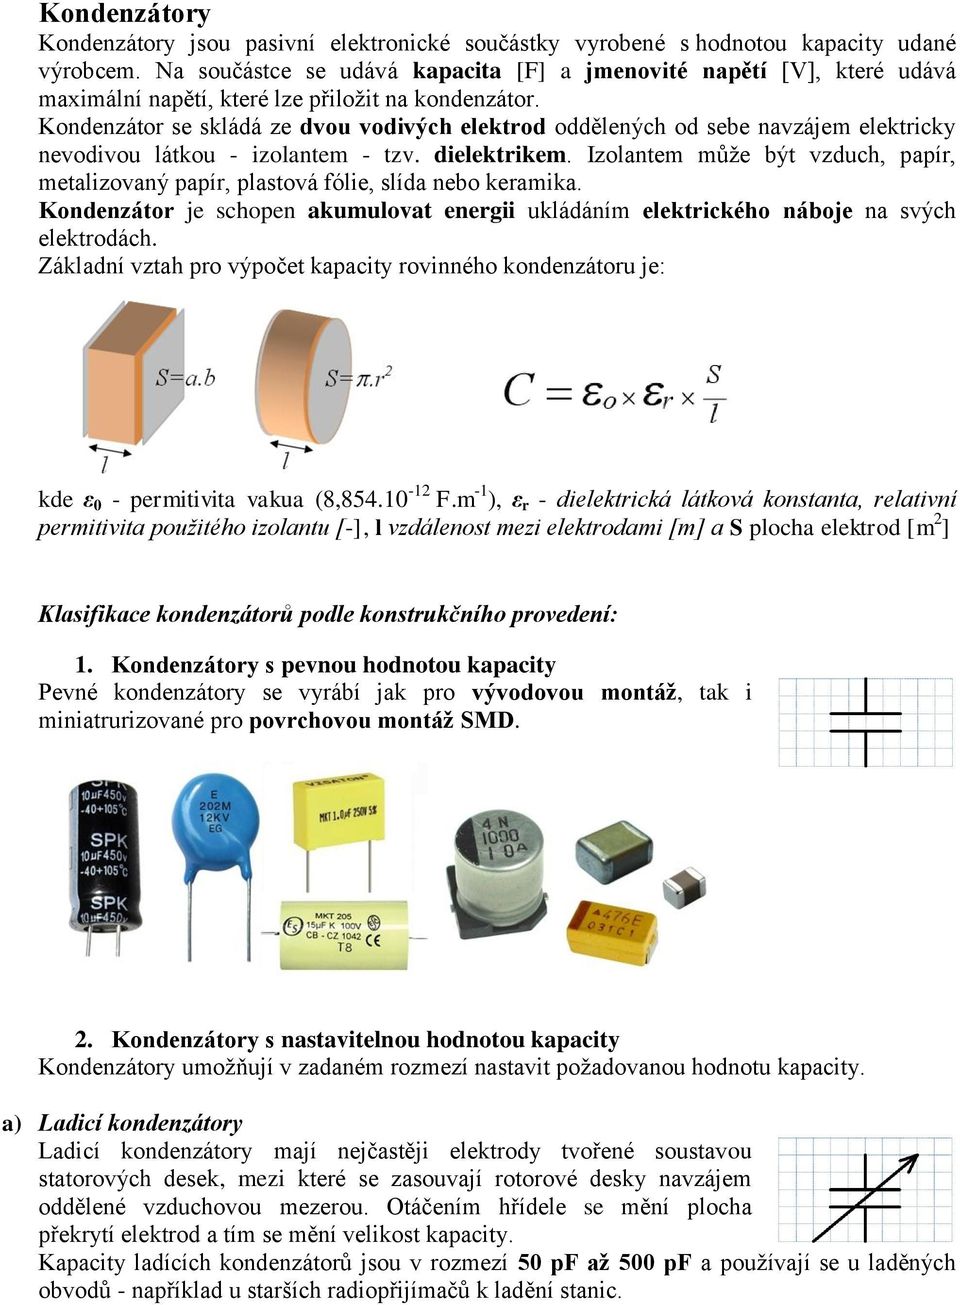 Kondenzátor se skládá ze dvou vodivých elektrod oddělených od sebe navzájem elektricky nevodivou látkou - izolantem - tzv. dielektrikem.